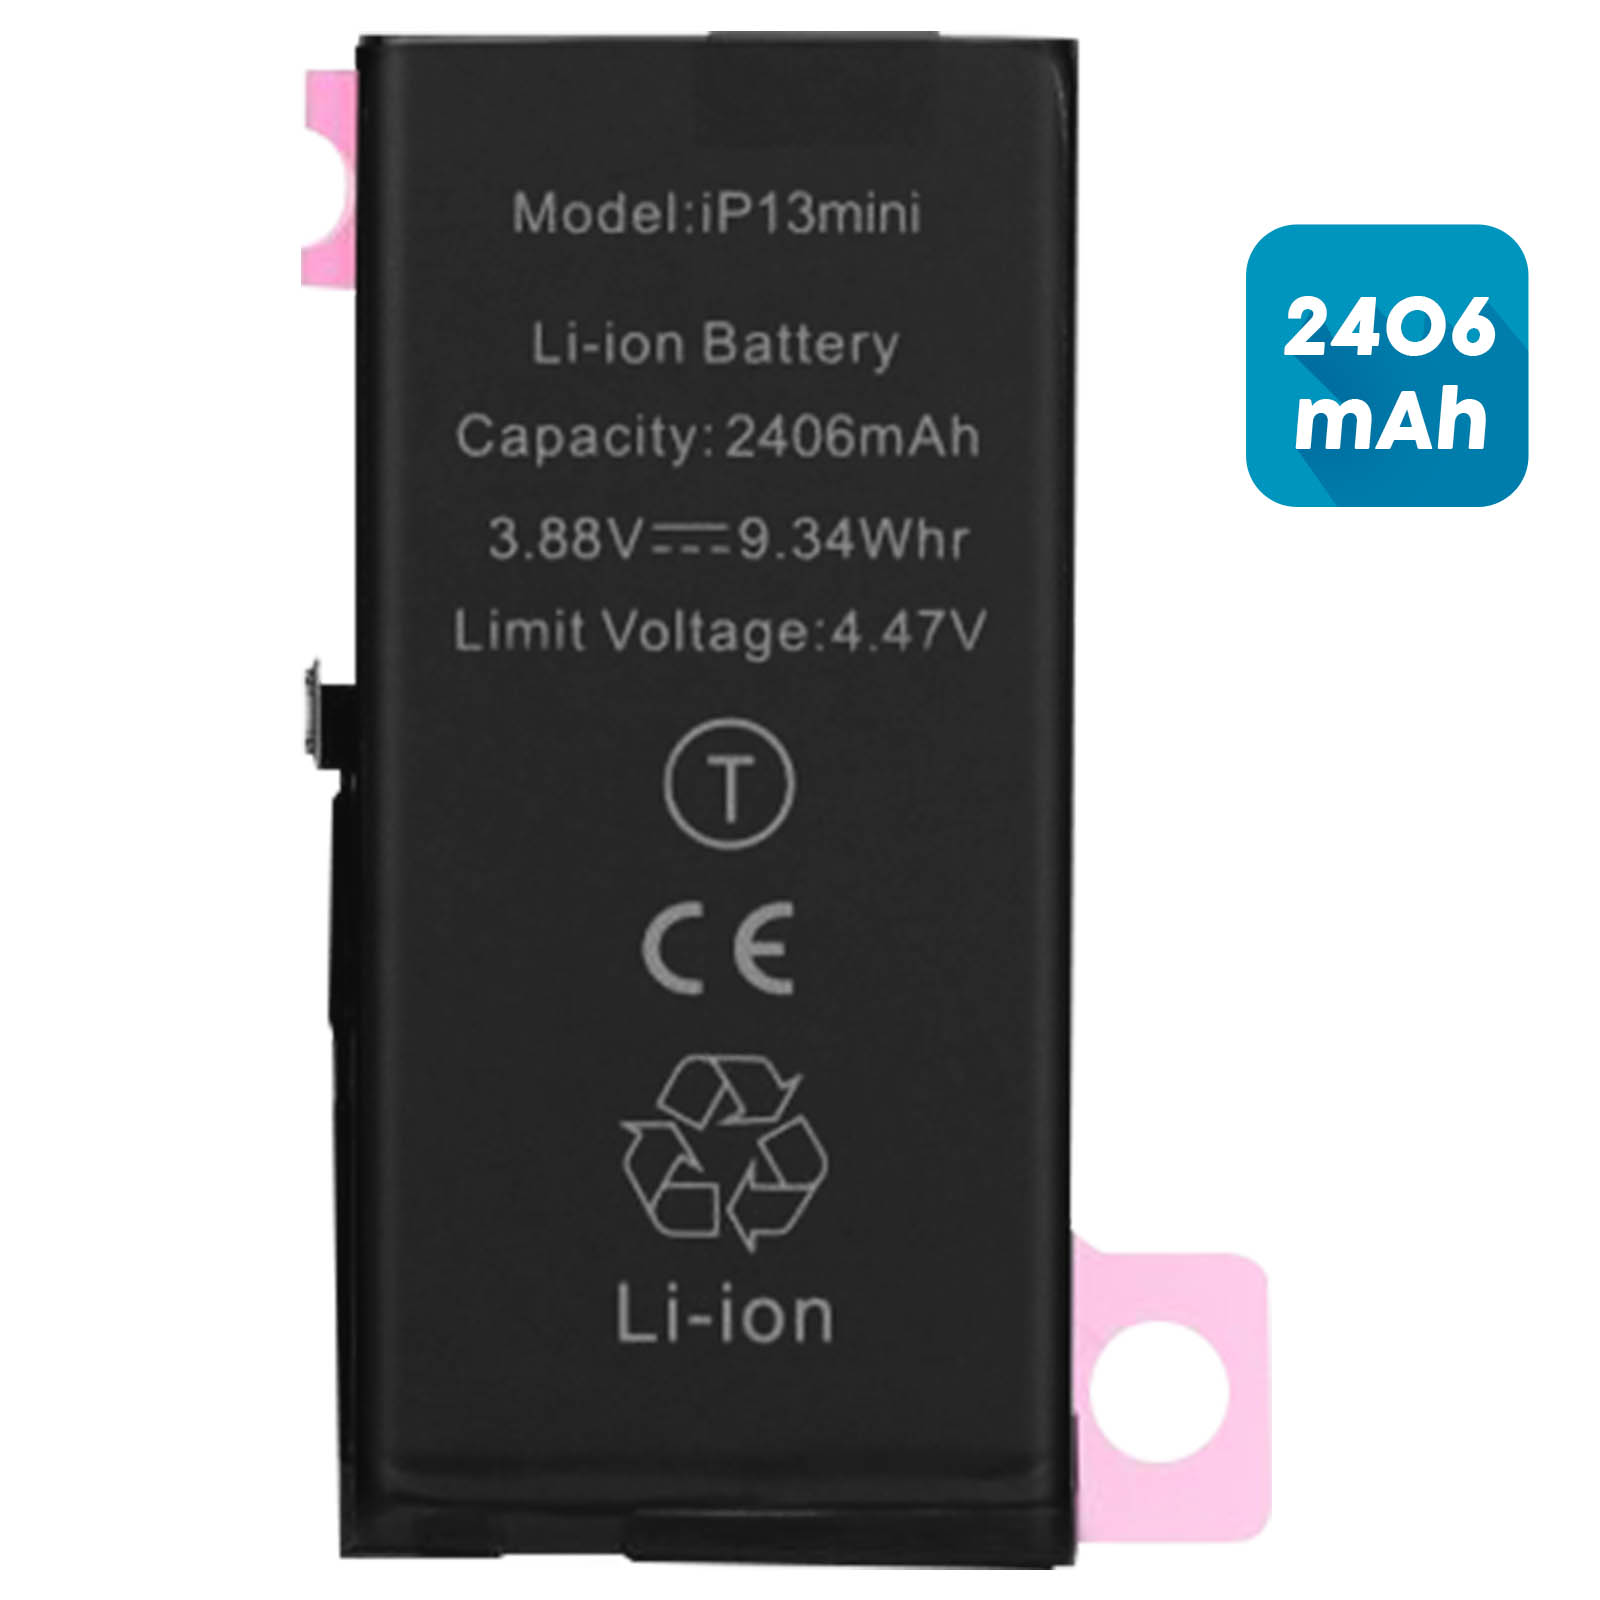 Batterie pour iPhone 13 Mini 2406 mAh